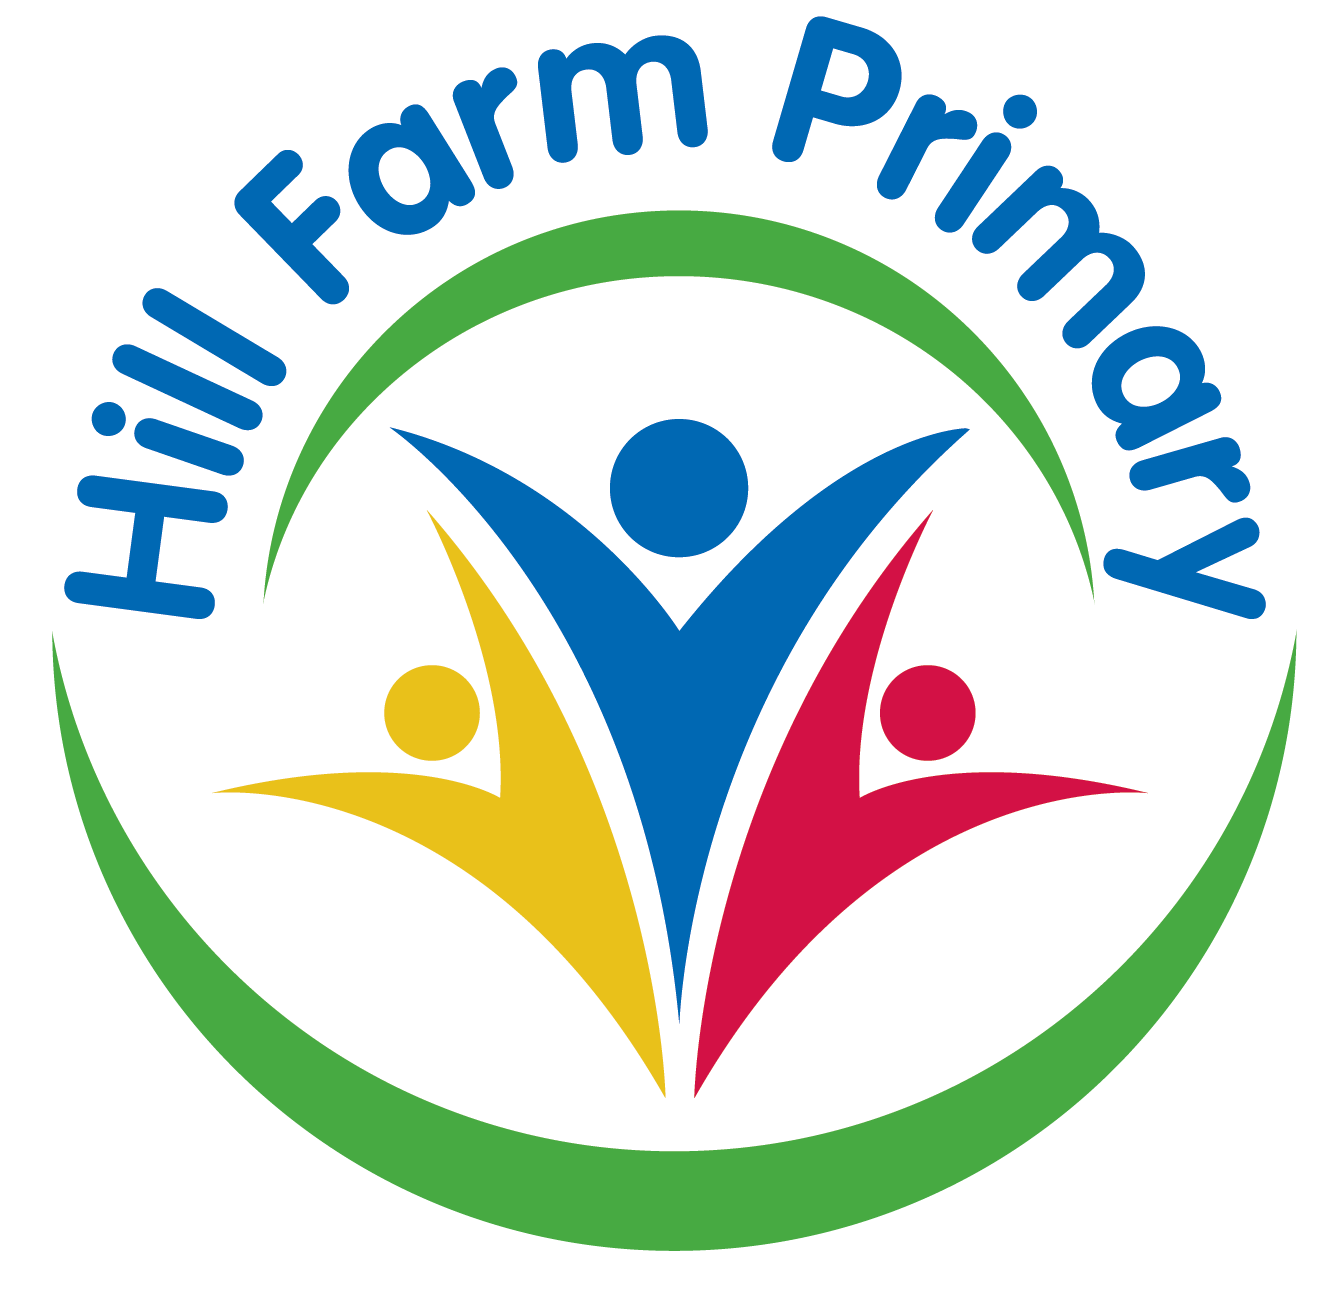 Hill Farm Primary School in Radford, Coventry.